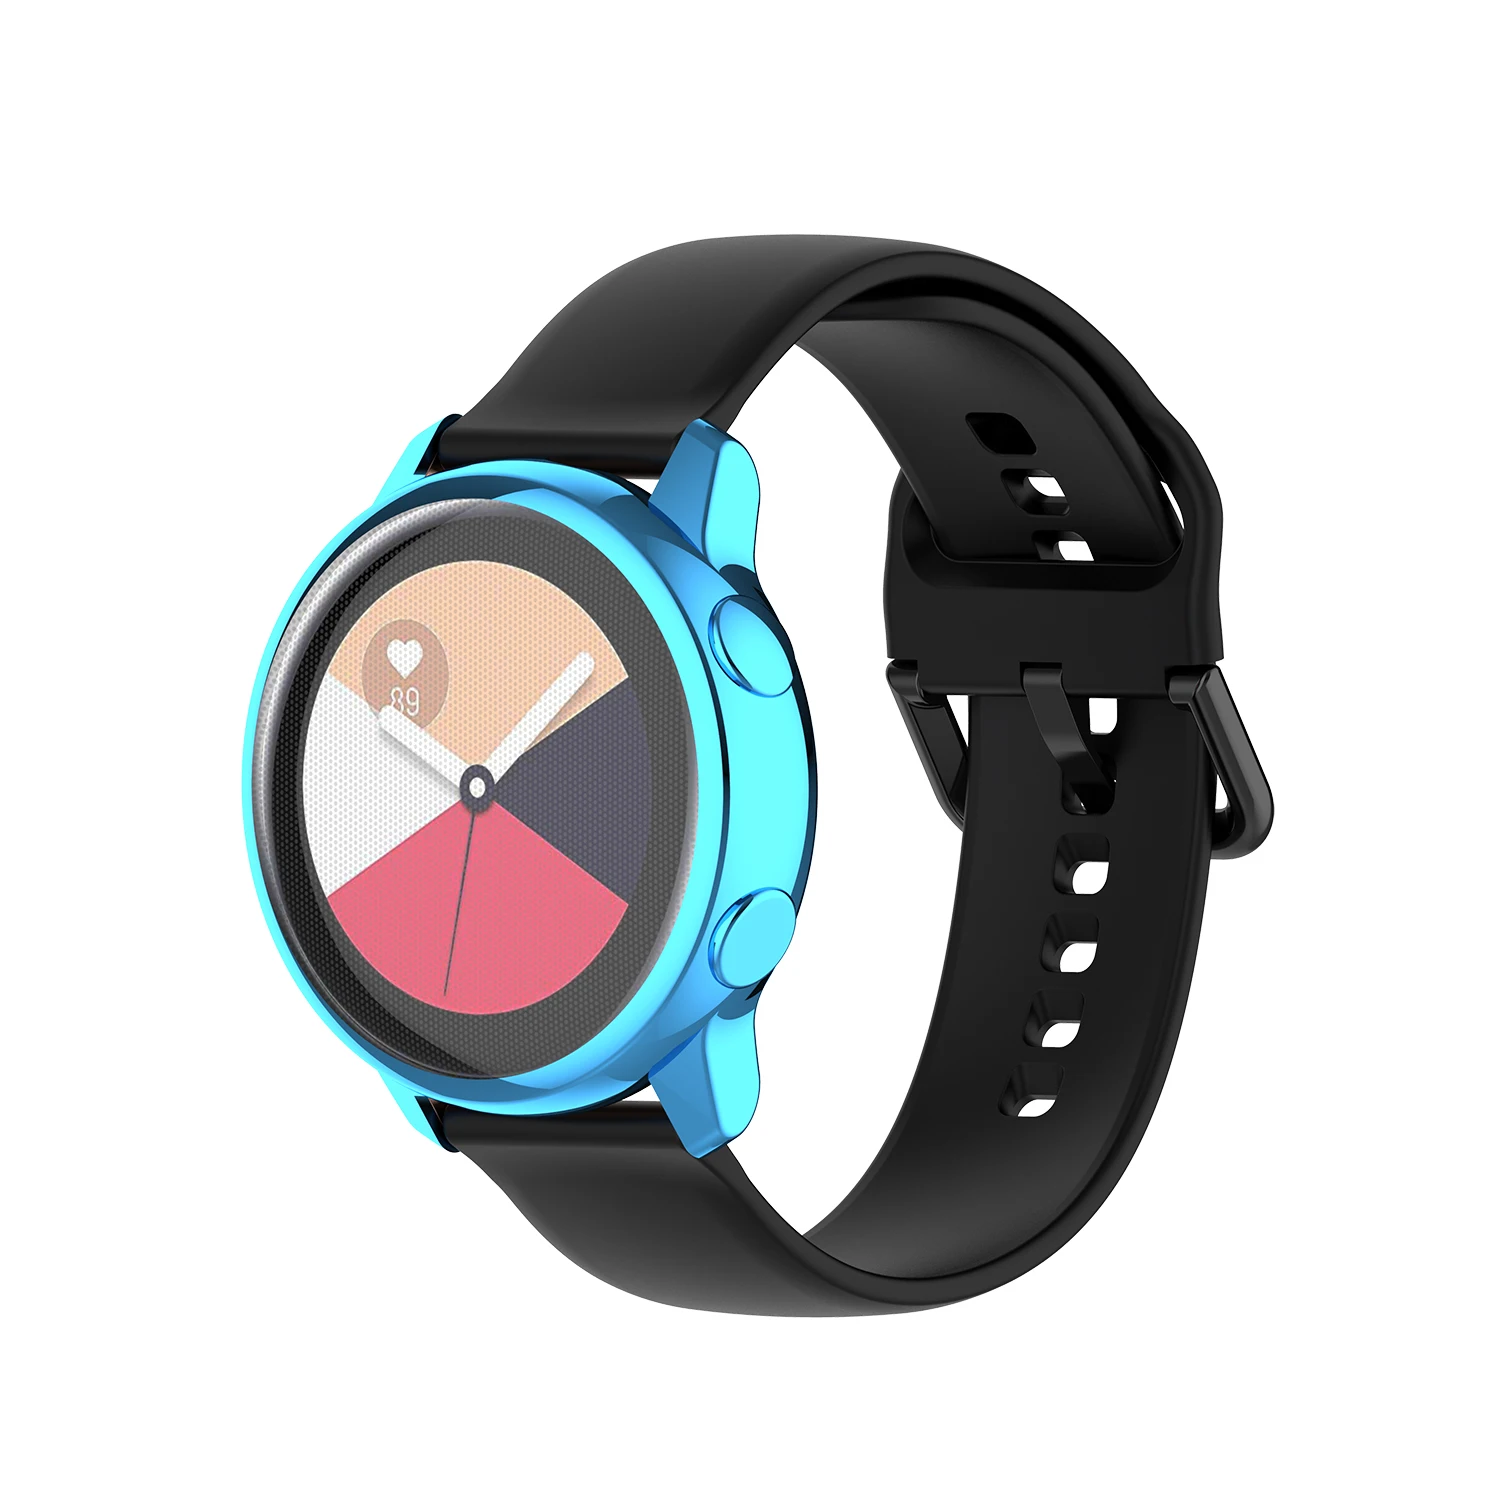 Galaxy watch Активный Чехол для samsung galaxy watch active/SM-R500 покрытие Красочный прозрачный ПК ТПУ мягкий пластиковый анти-осенний чехол